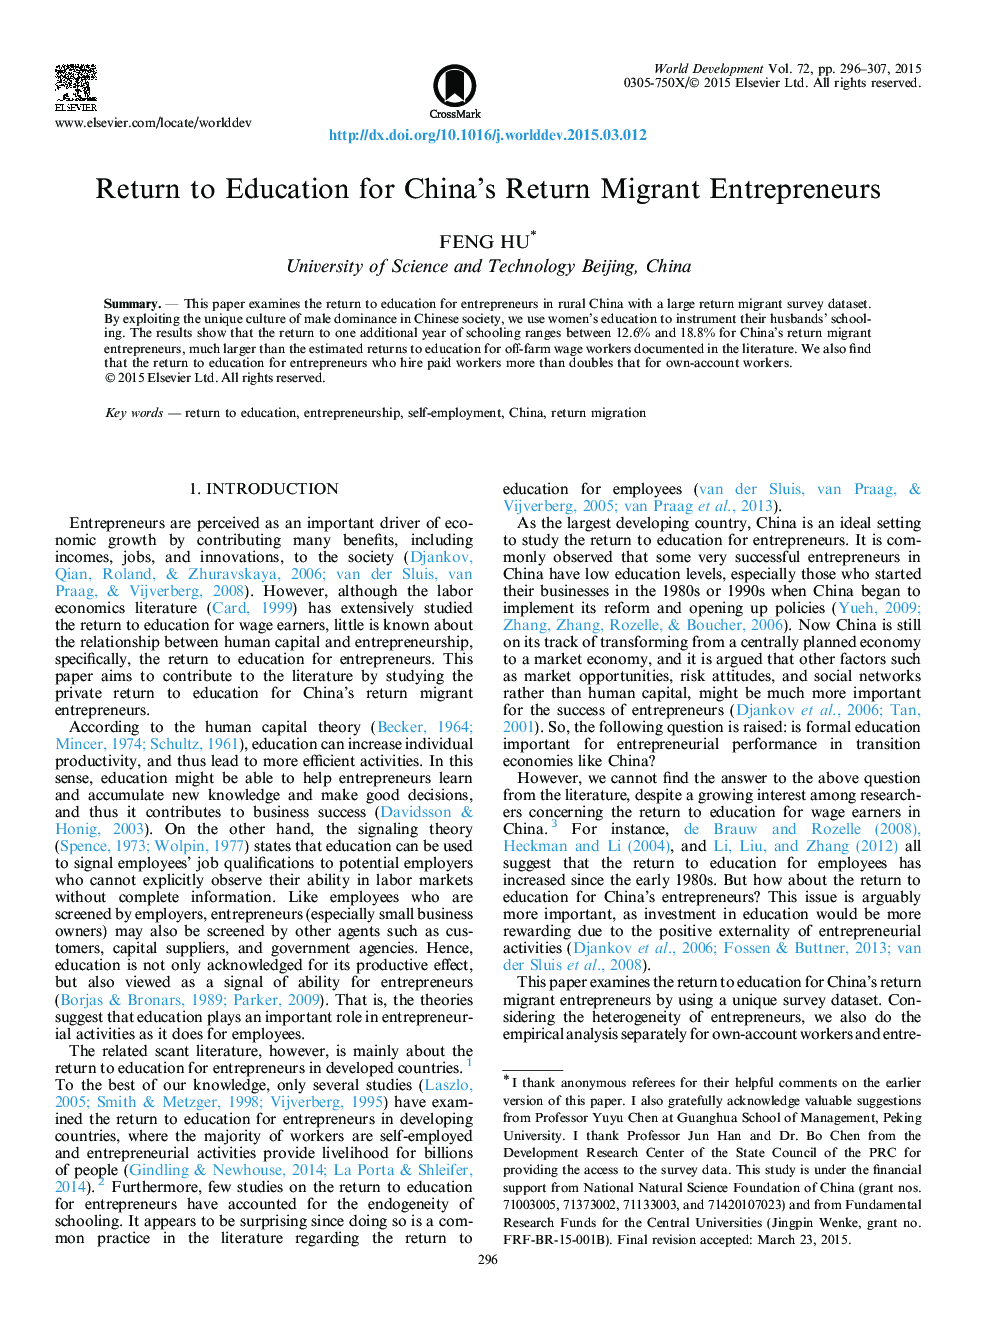 بازگشت به آموزش و پرورش برای بازرگانان مهاجرت چینی 